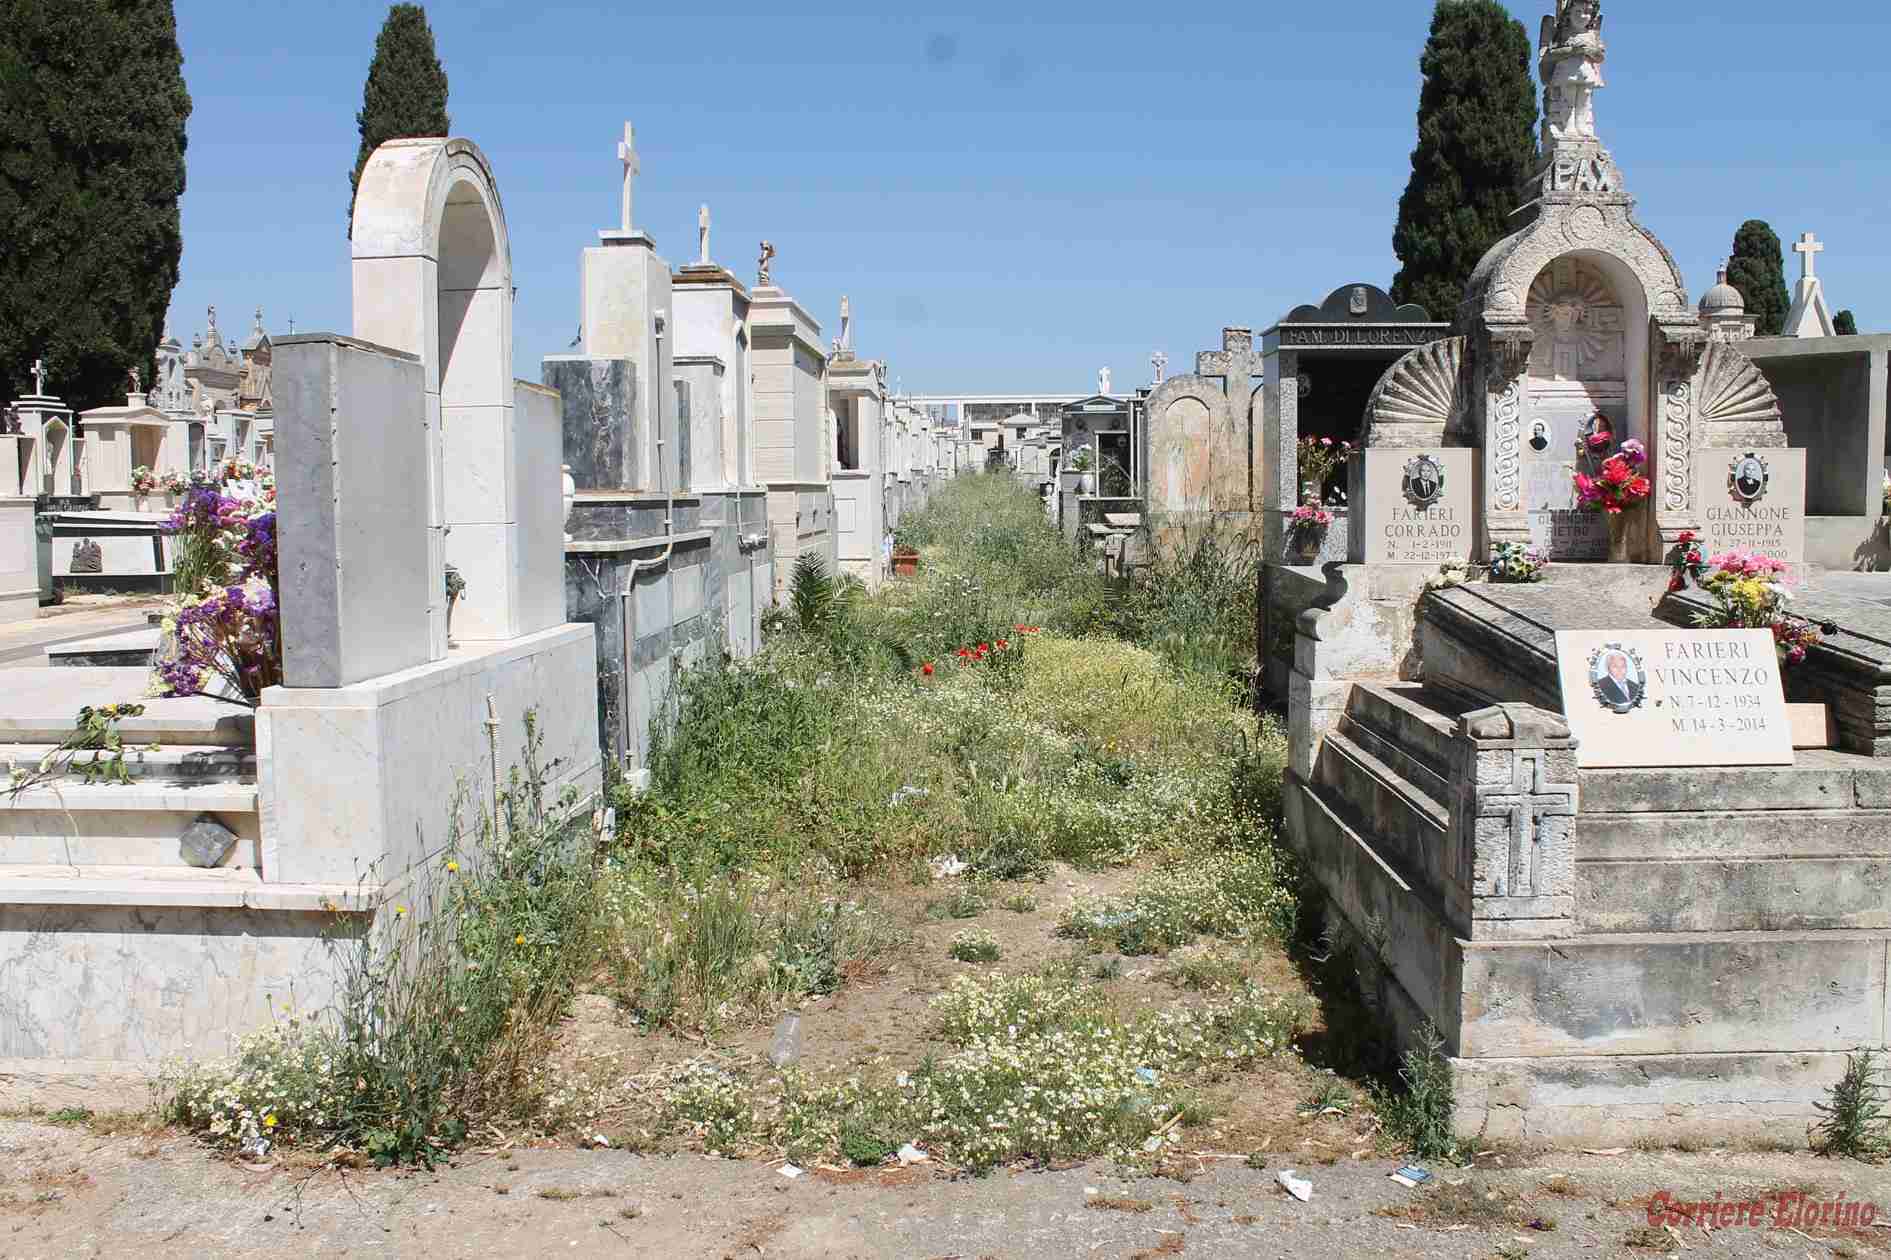 Il 5 dicembre cimitero comunale chiuso per diserbatura